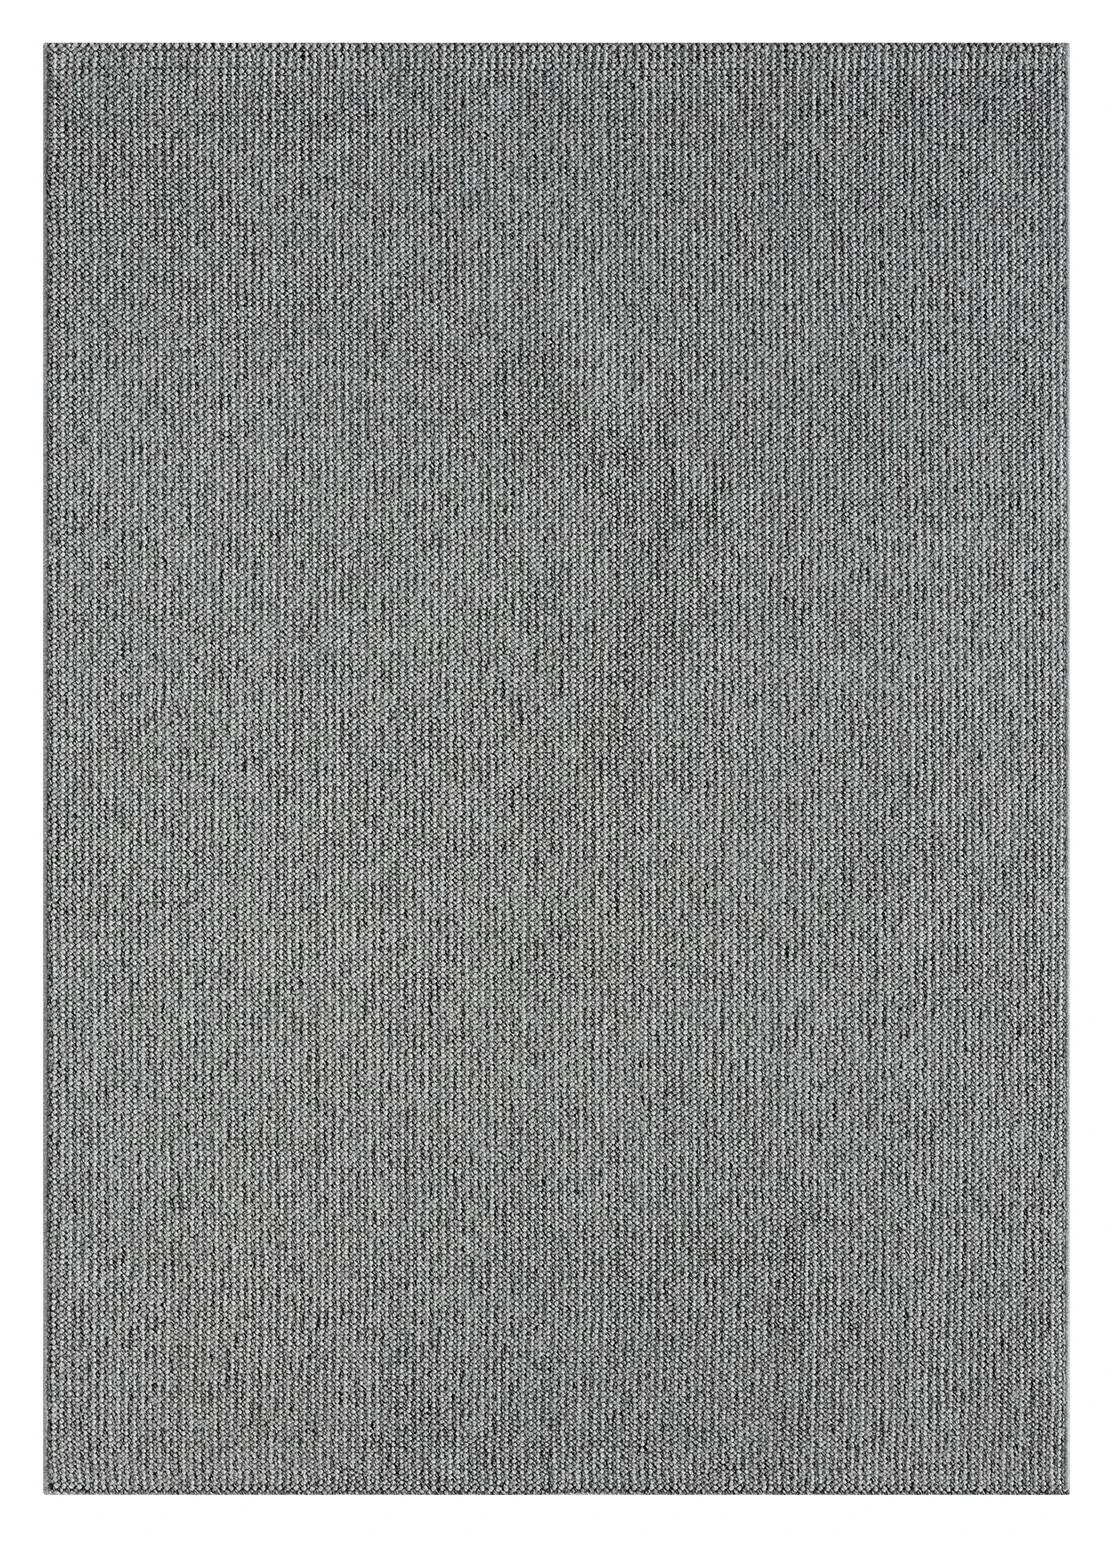 שטיח דגם CALIFORNIA לולאות צבע אפור כהה  : image 3